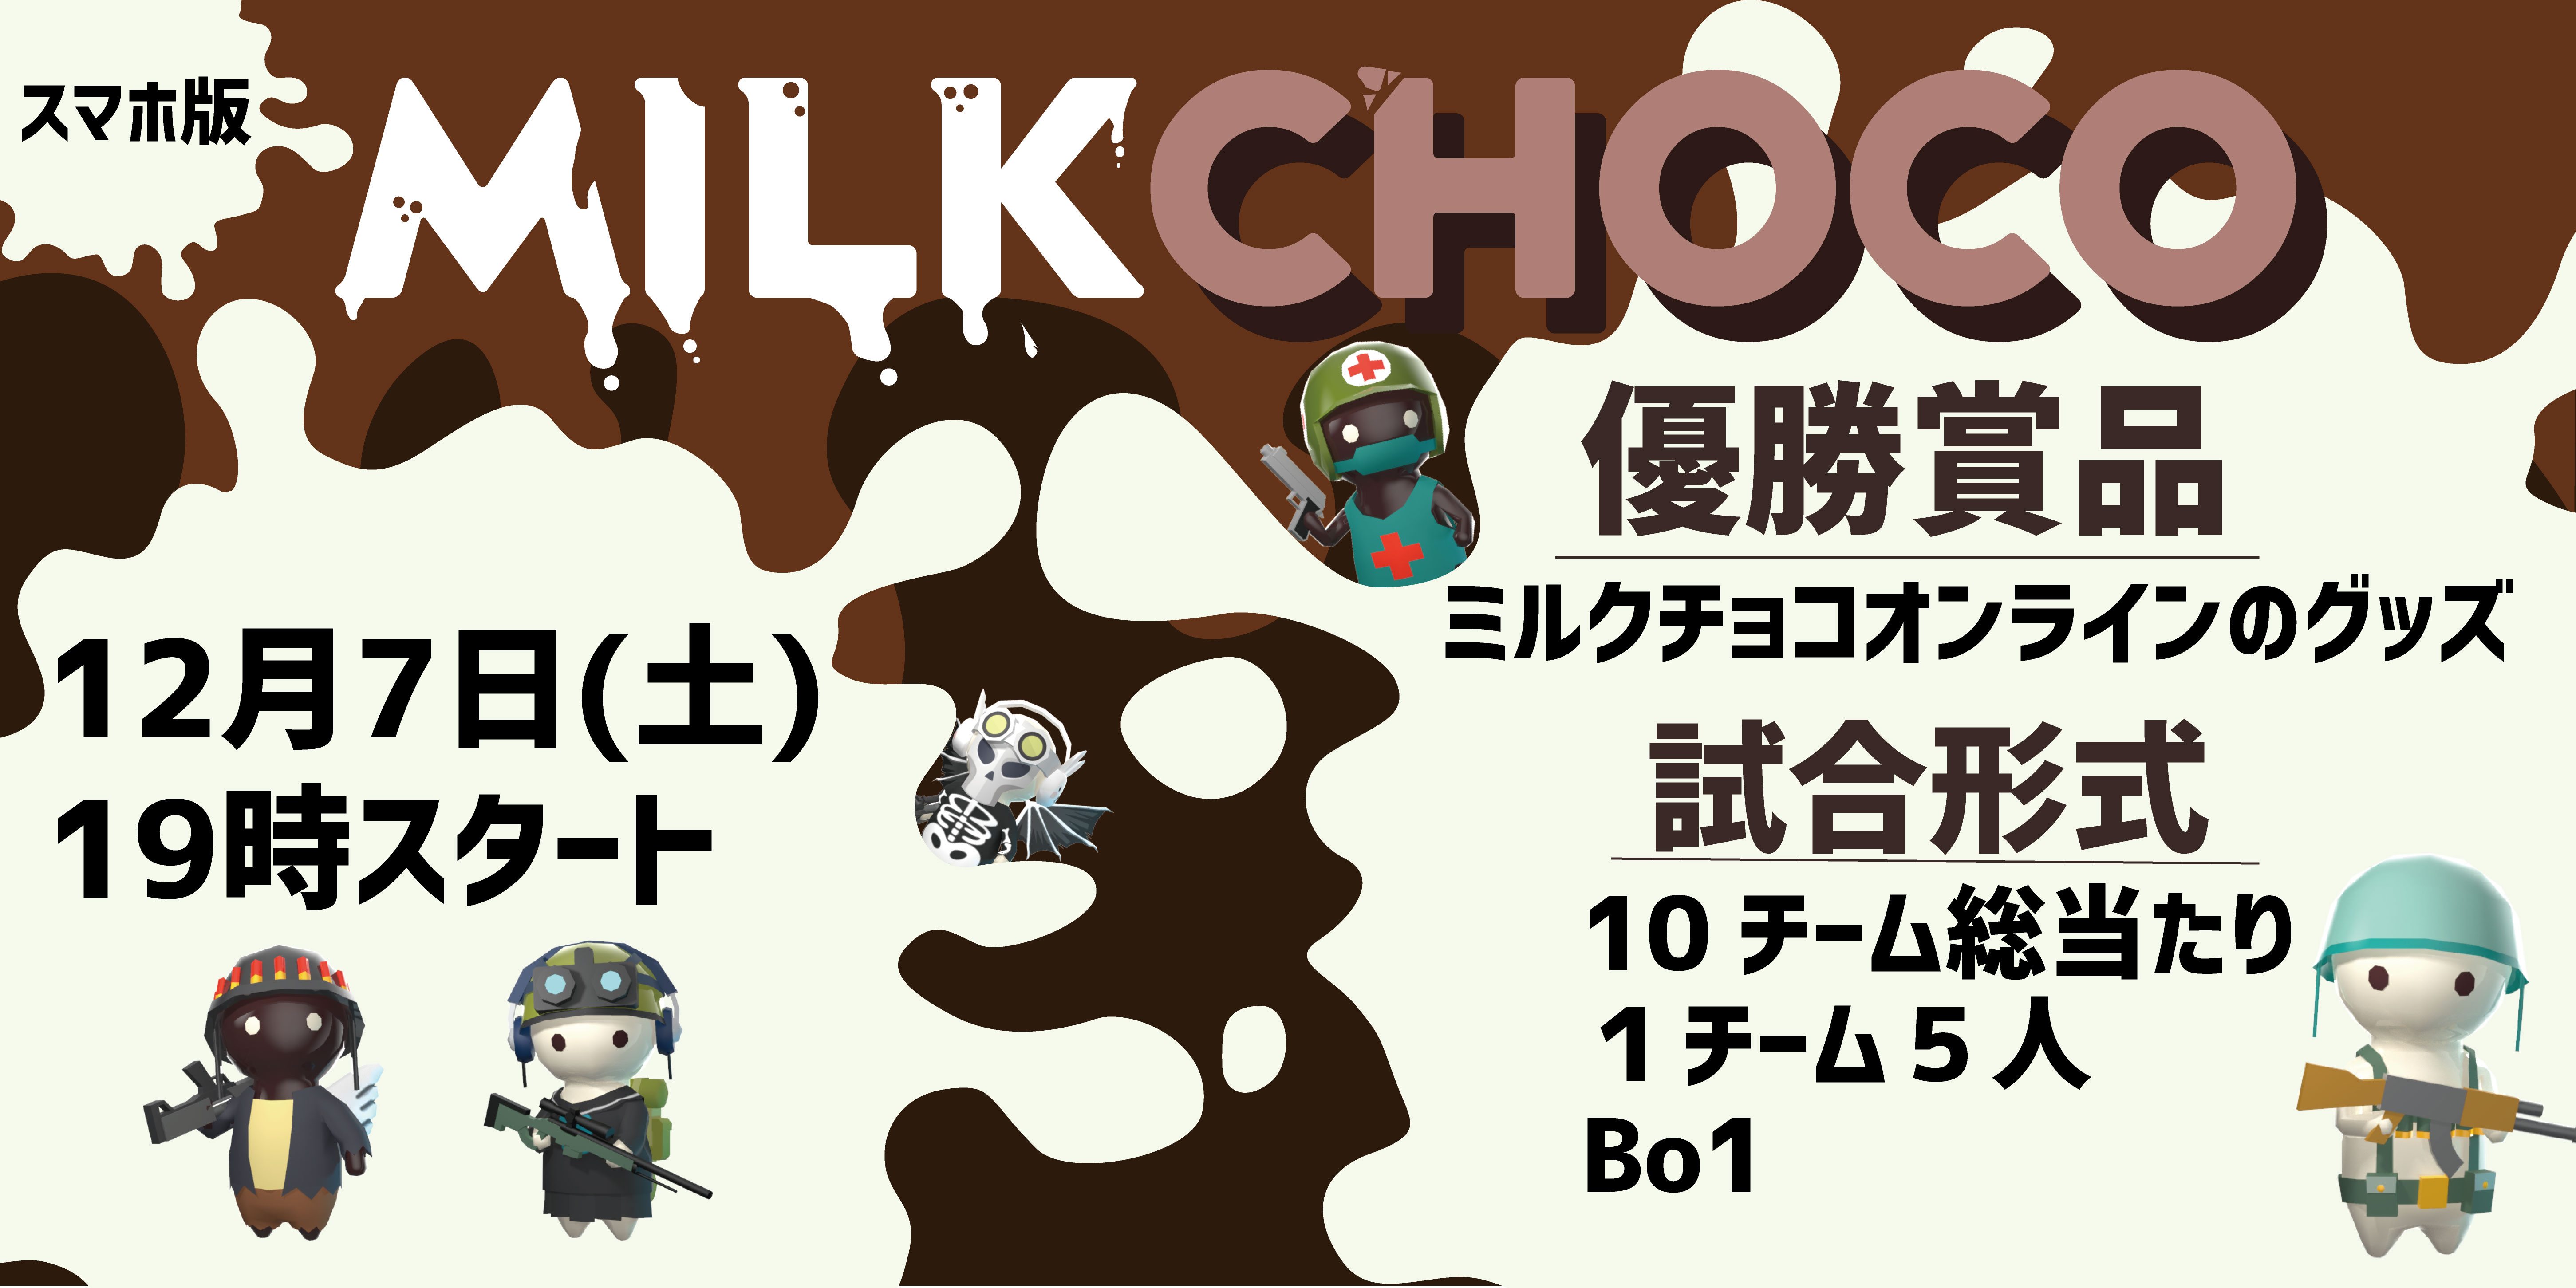 19年12月7日 土 第1回ミルクチョコオンライン コミュニティ大会を開催 株式会社packageのプレスリリース